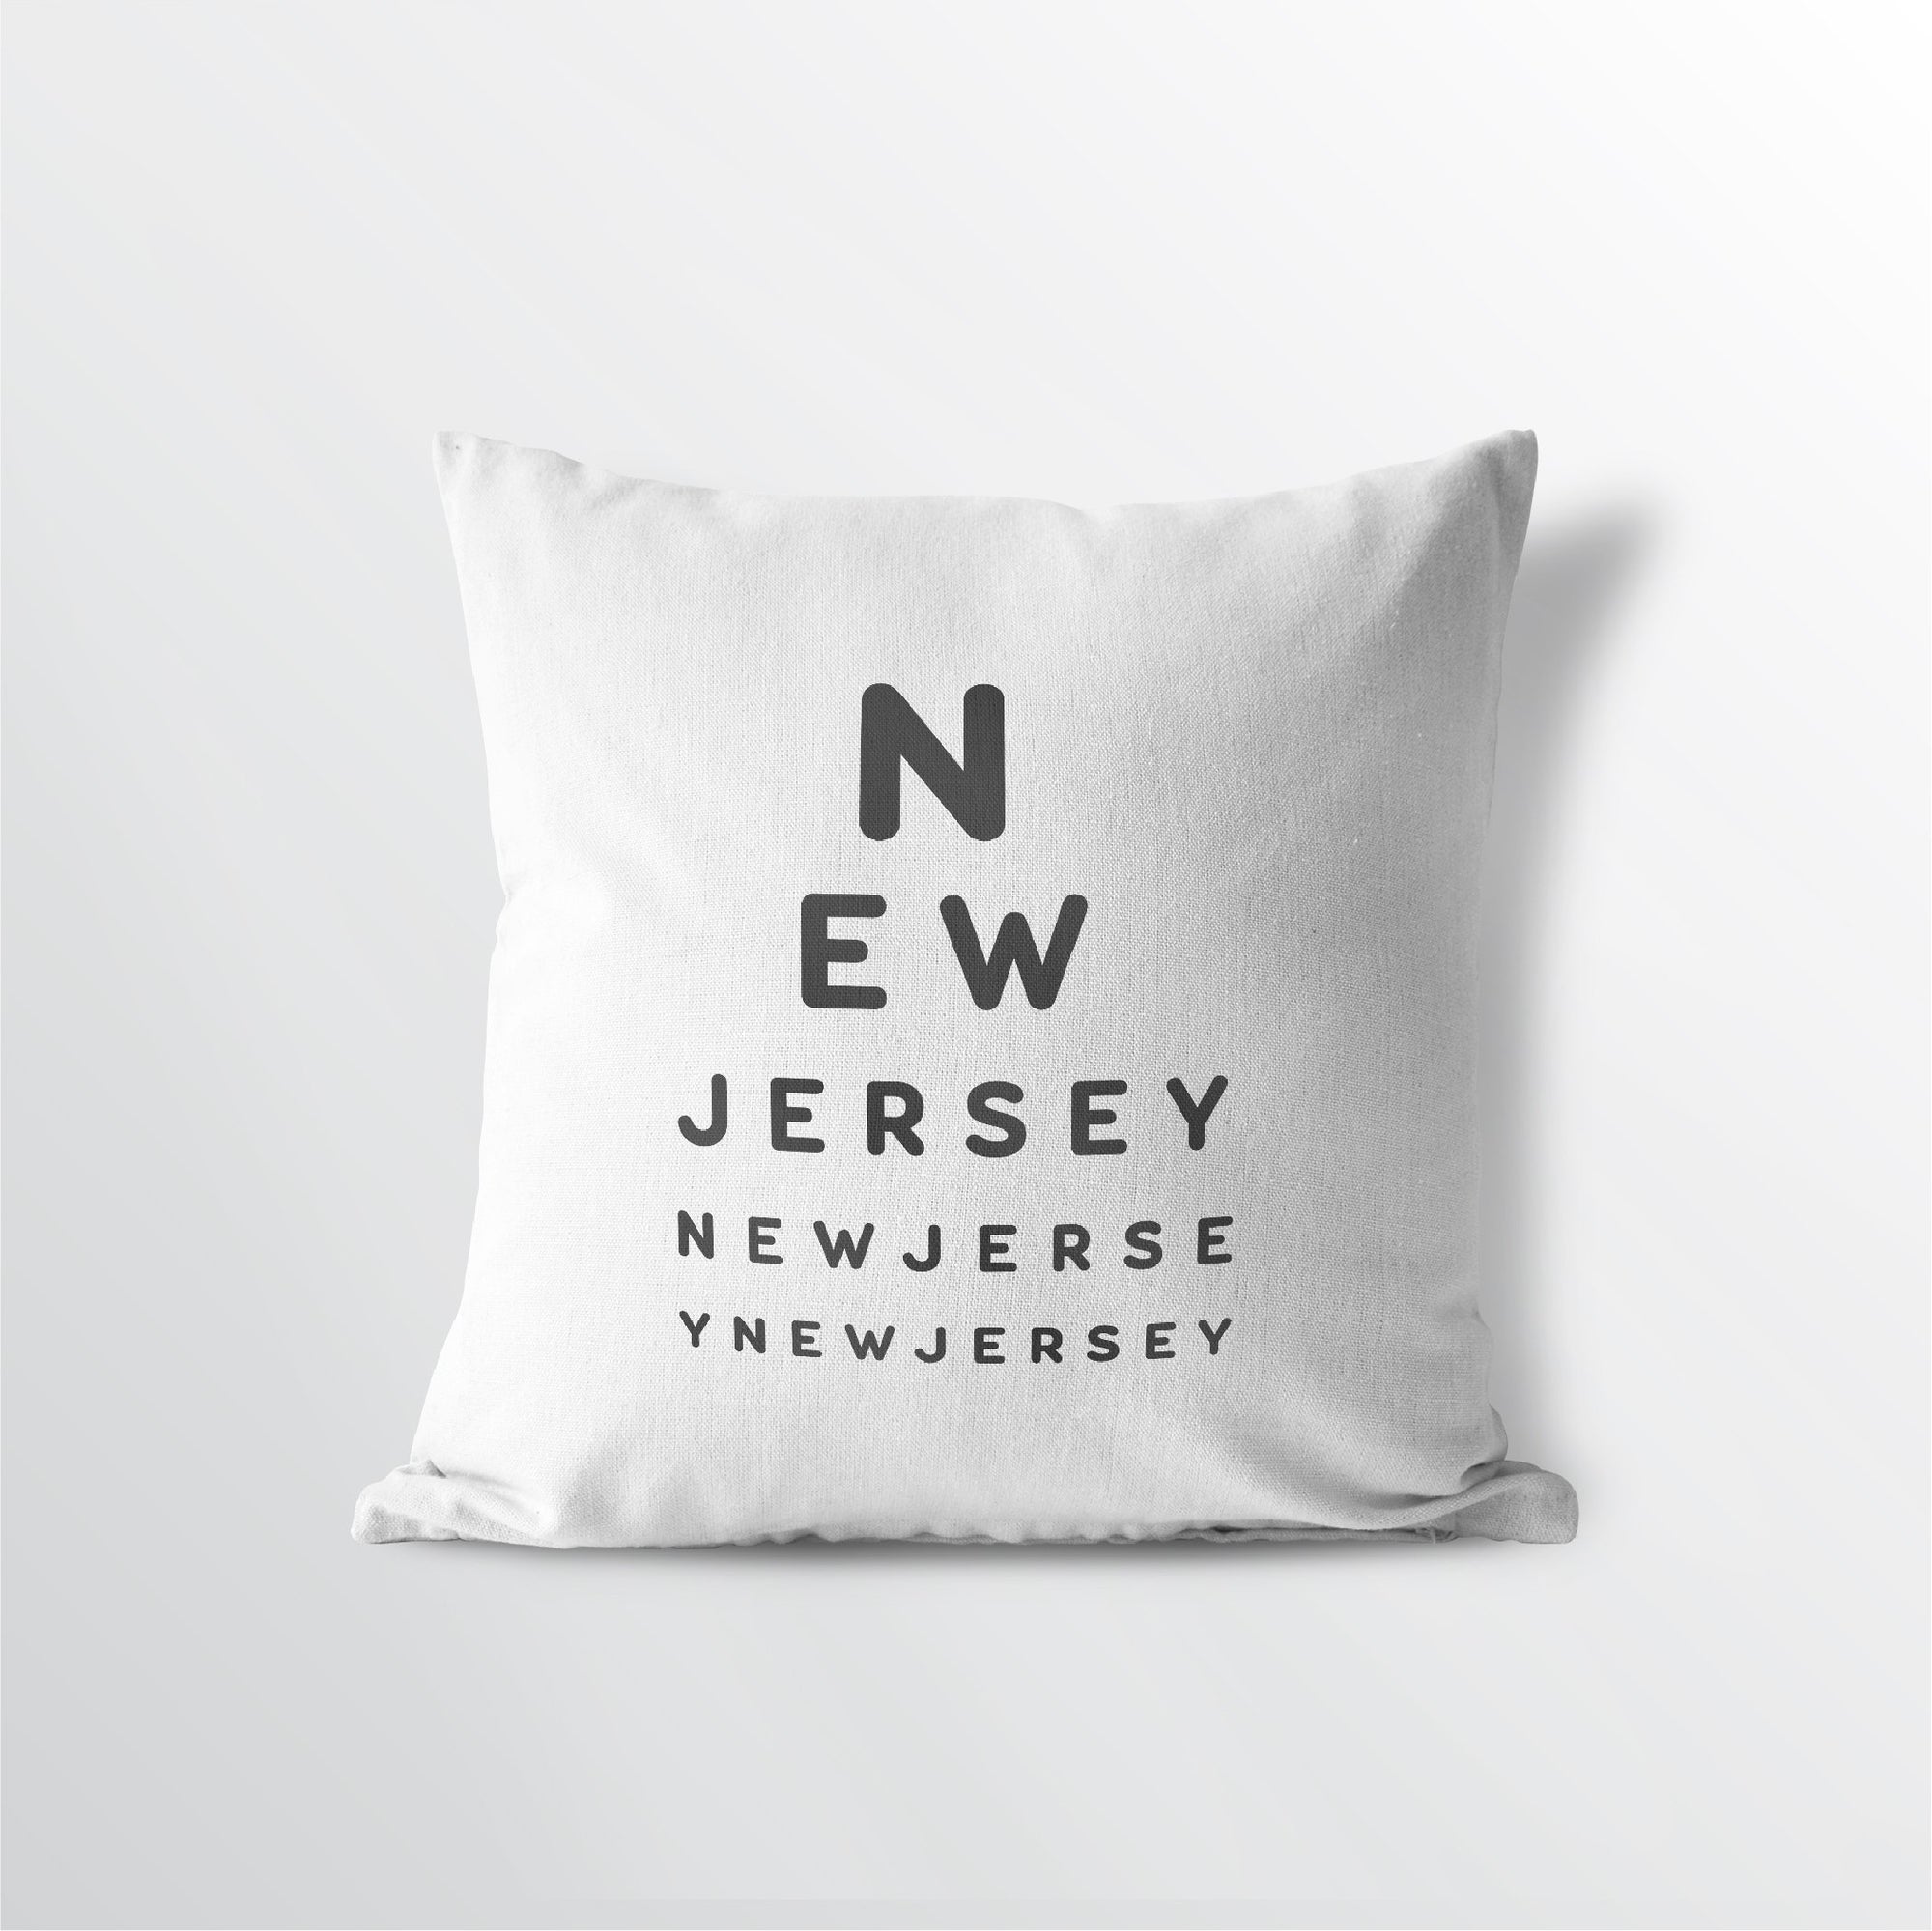 New Jersey "Eye Exam" Throw Pillow